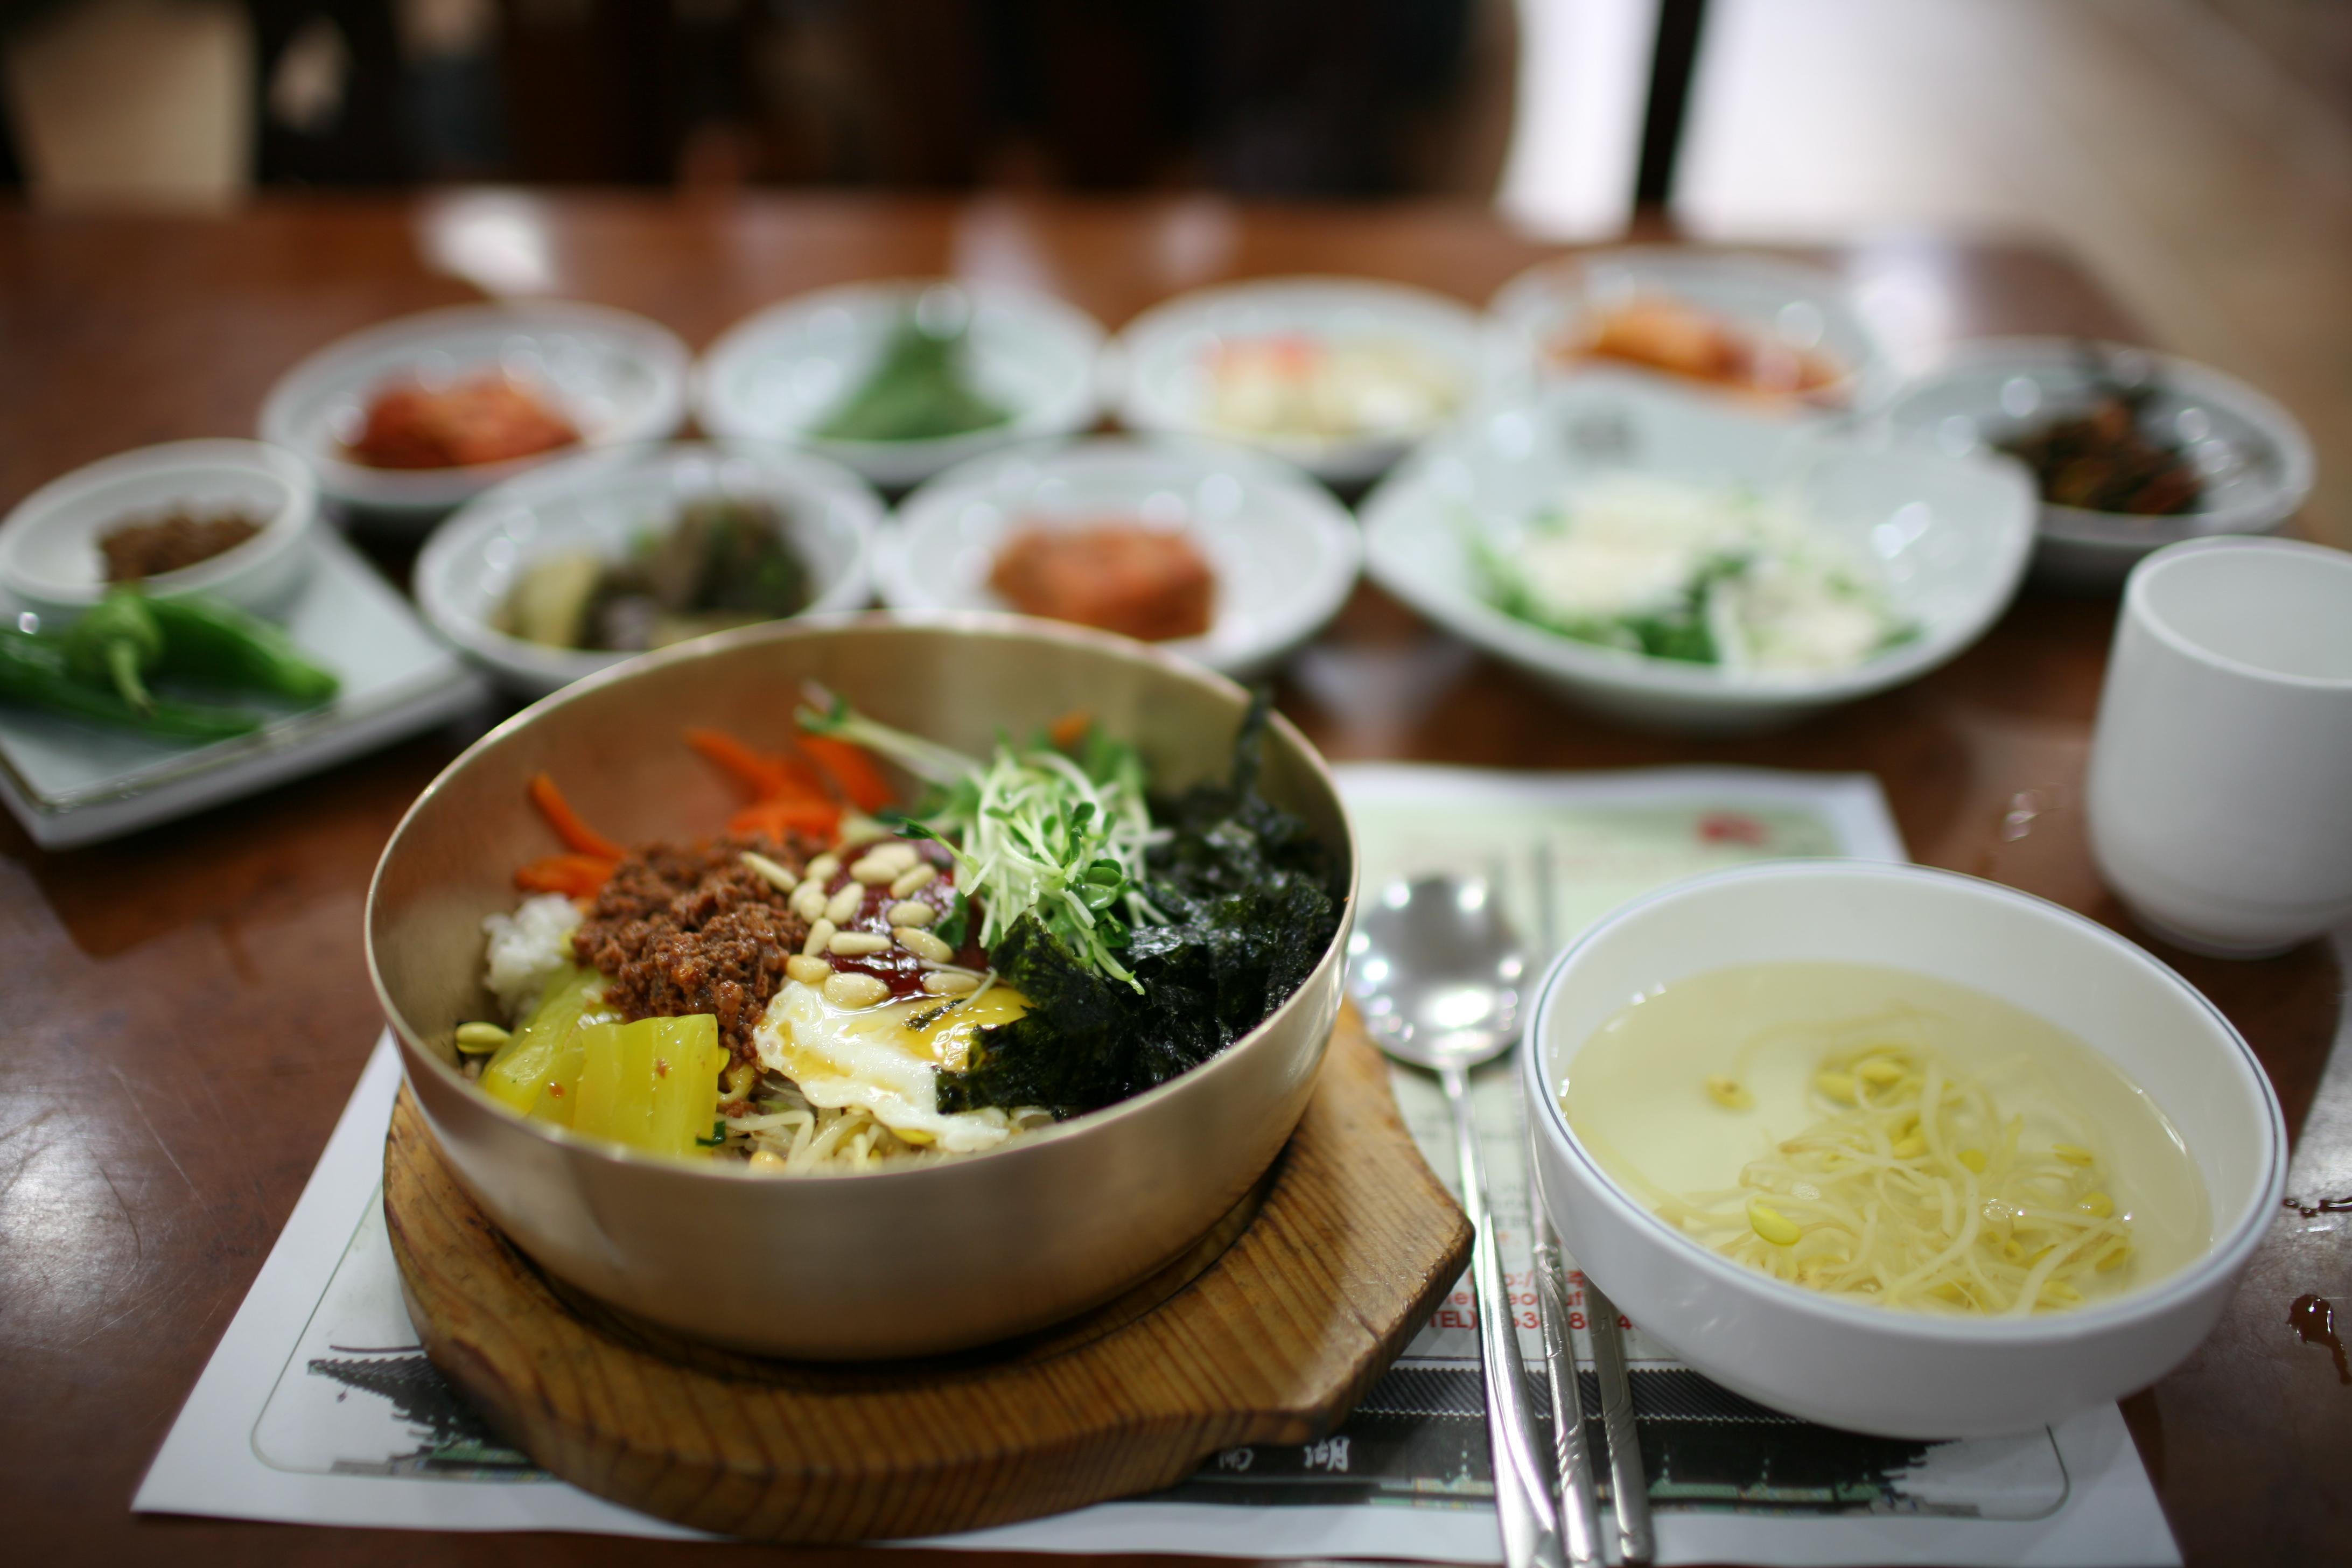 李家韓國食堂 | 李家韓國食堂 | JimXpp | Flickr